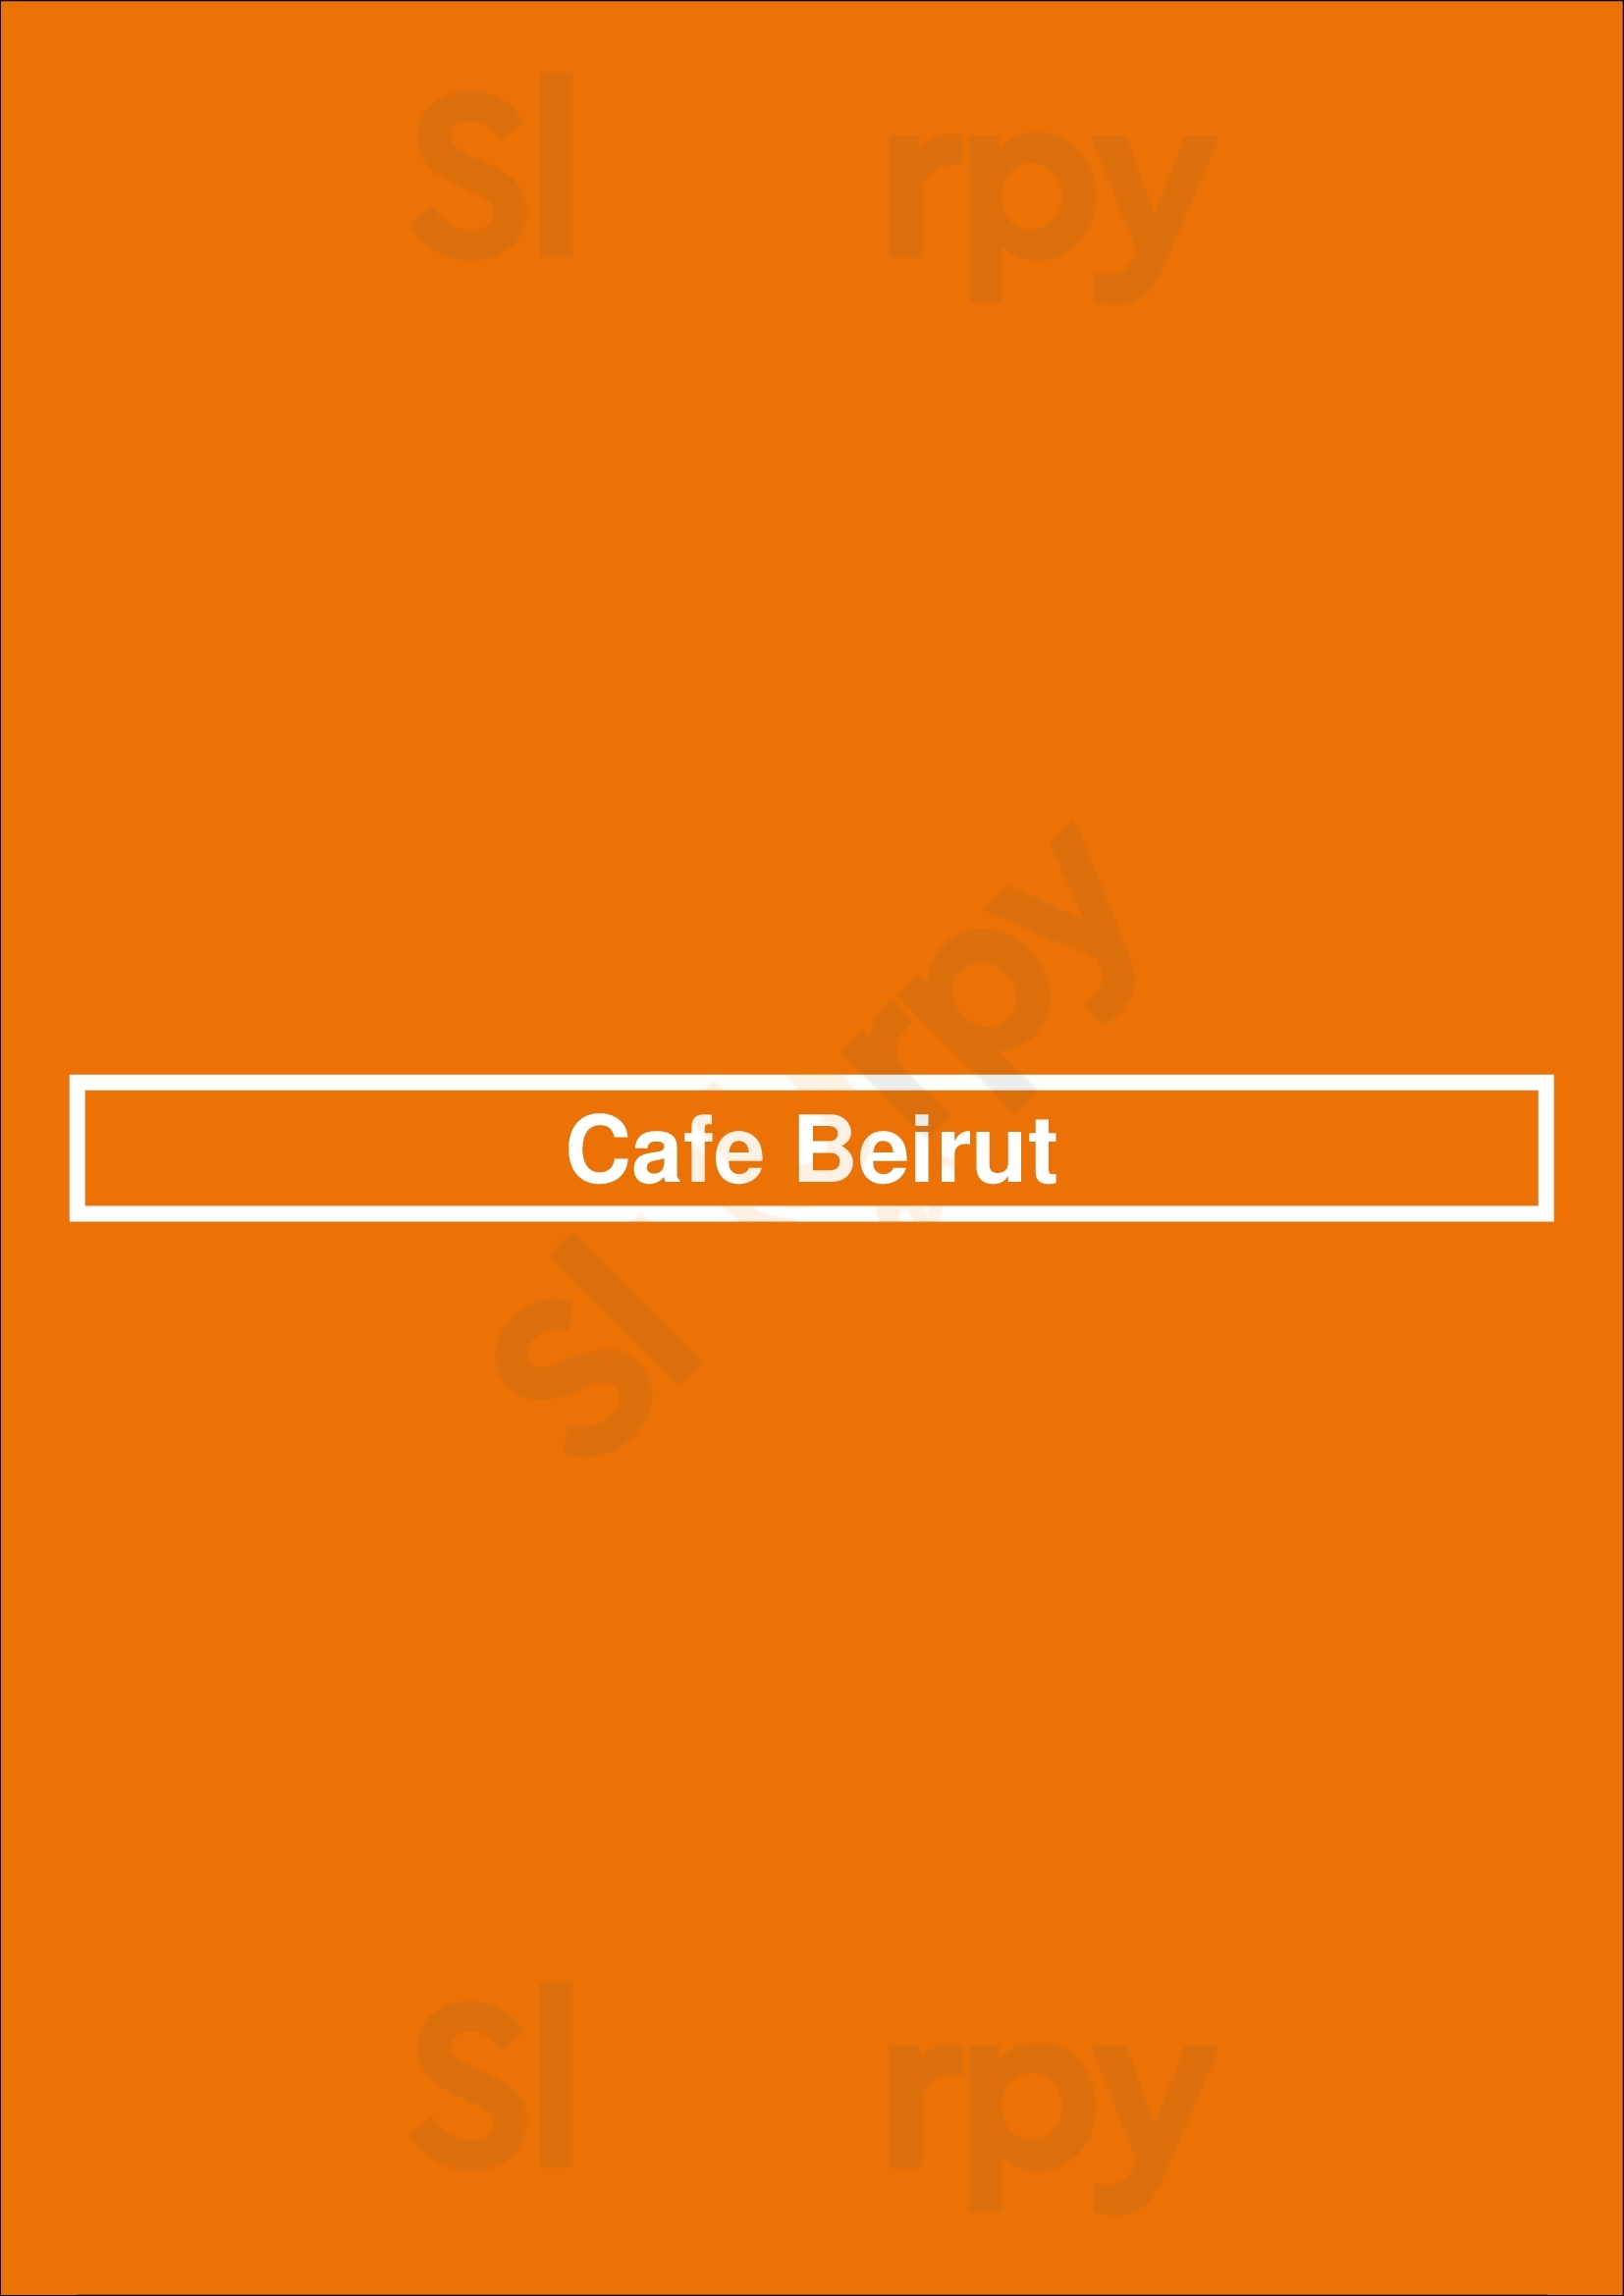 Cafe Beirut Boston Menu - 1